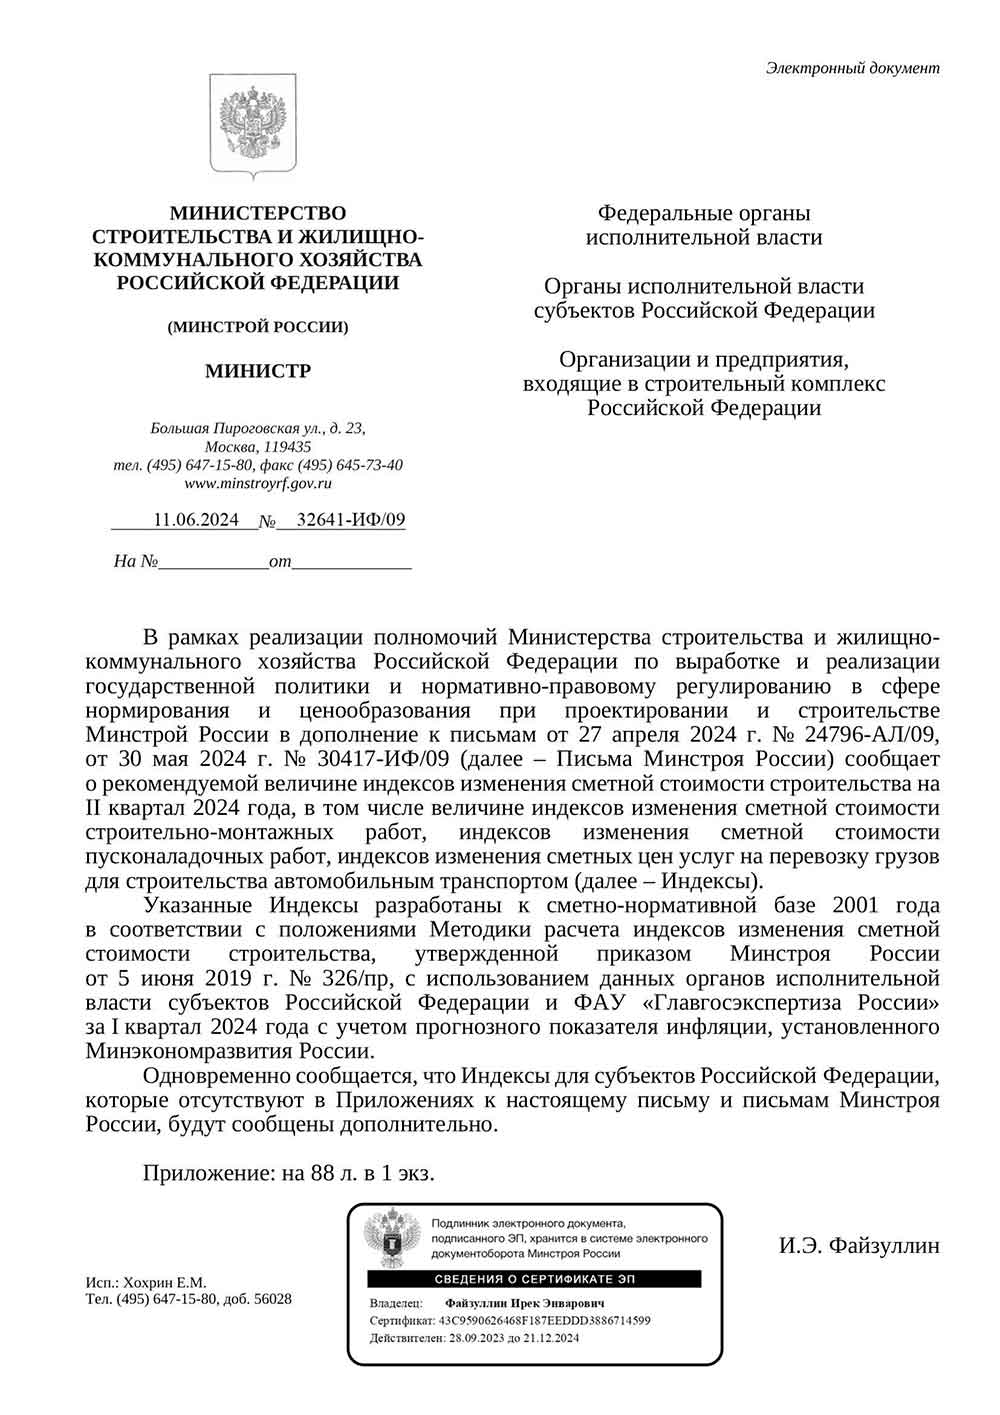 Письмо Минстроя РФ №32641-ИФ/09 от 11.06.2024 г. Скачать ПДФ